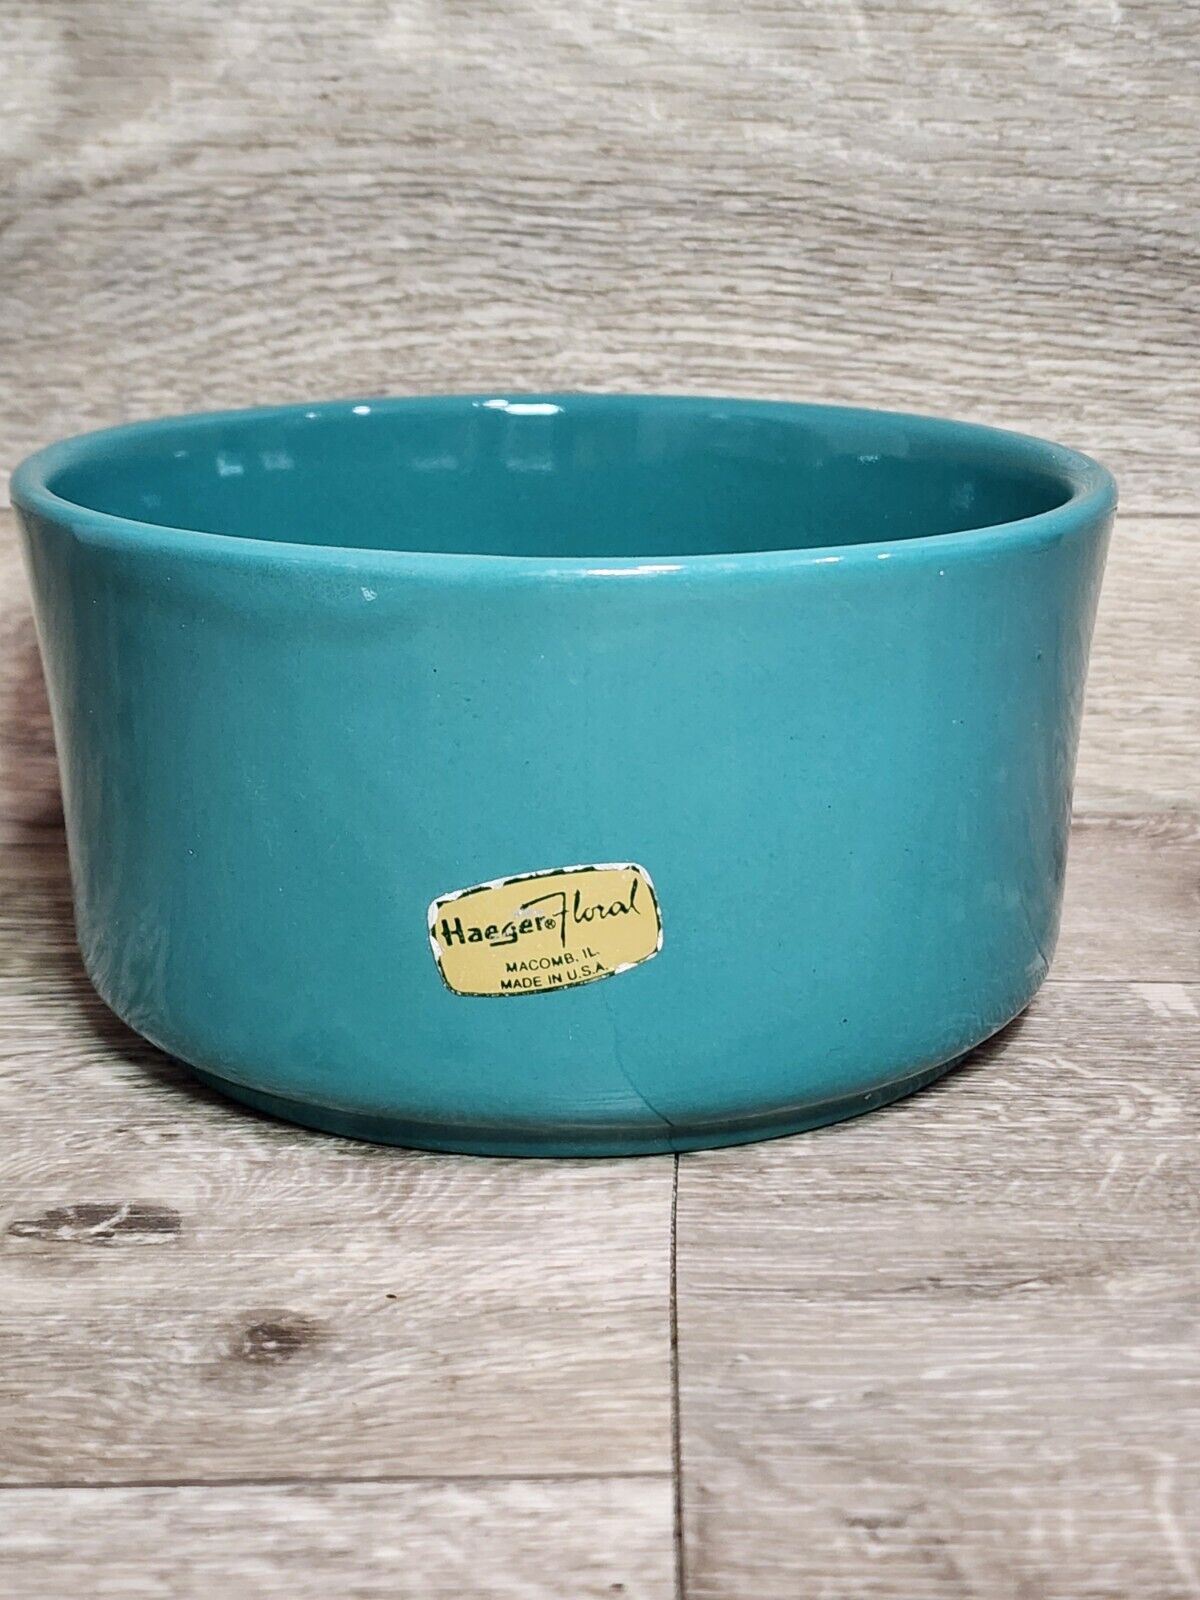 Haeger Floral Pottery USA Planter Bowl, Pet Dish, Aqua Blue Green, Teal 6”x 6\